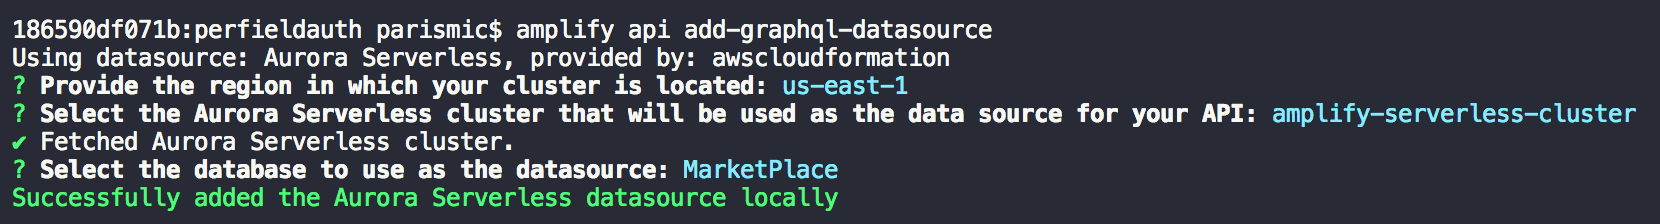 Add GraphQL Data Source